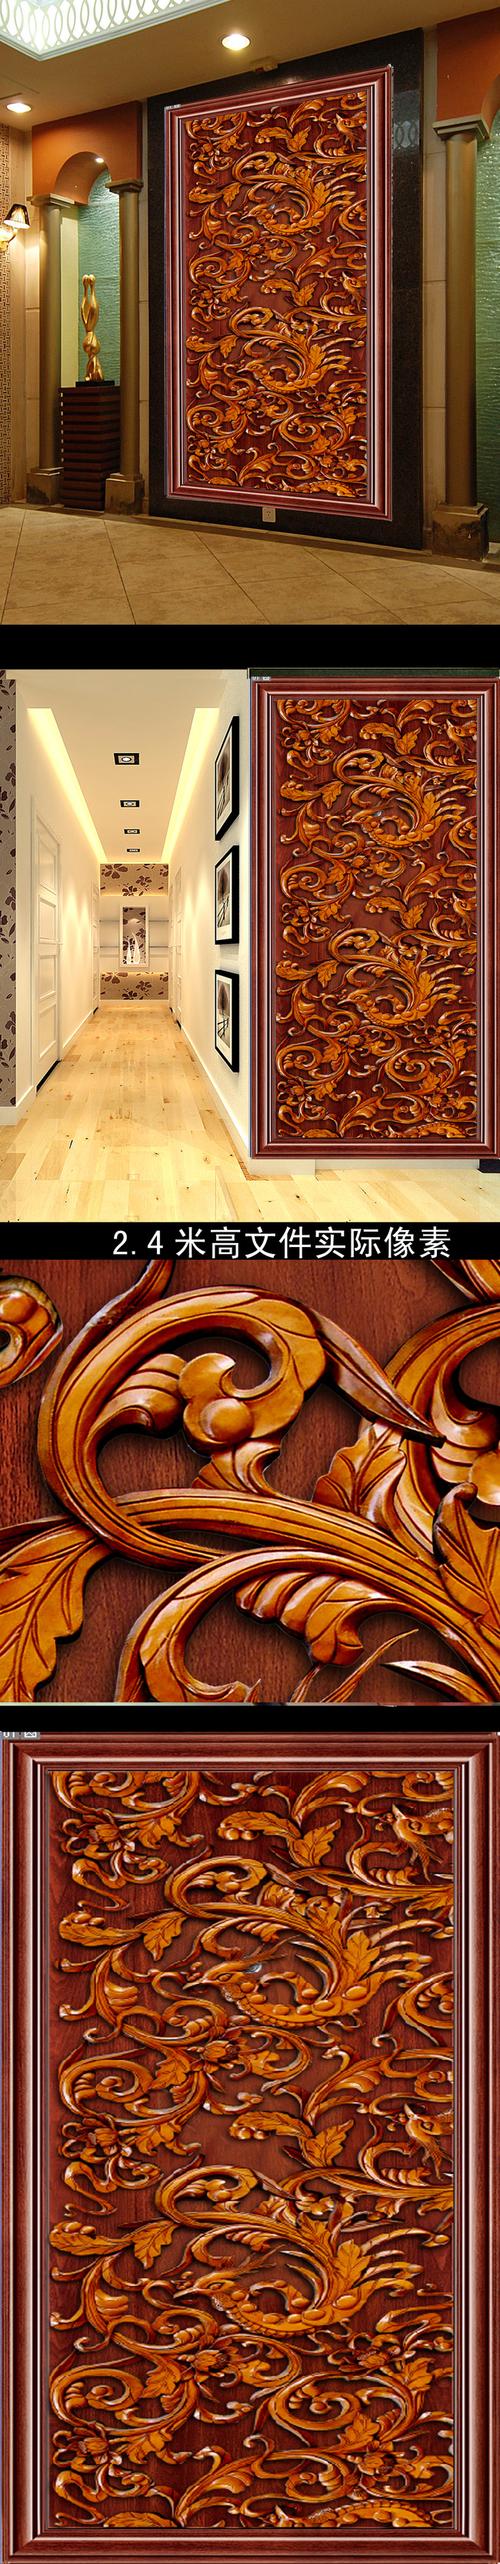 3d壁画木雕木刻雕刻花鸟凤凰中式风格红木木头雕花玄关壁画木纹说明